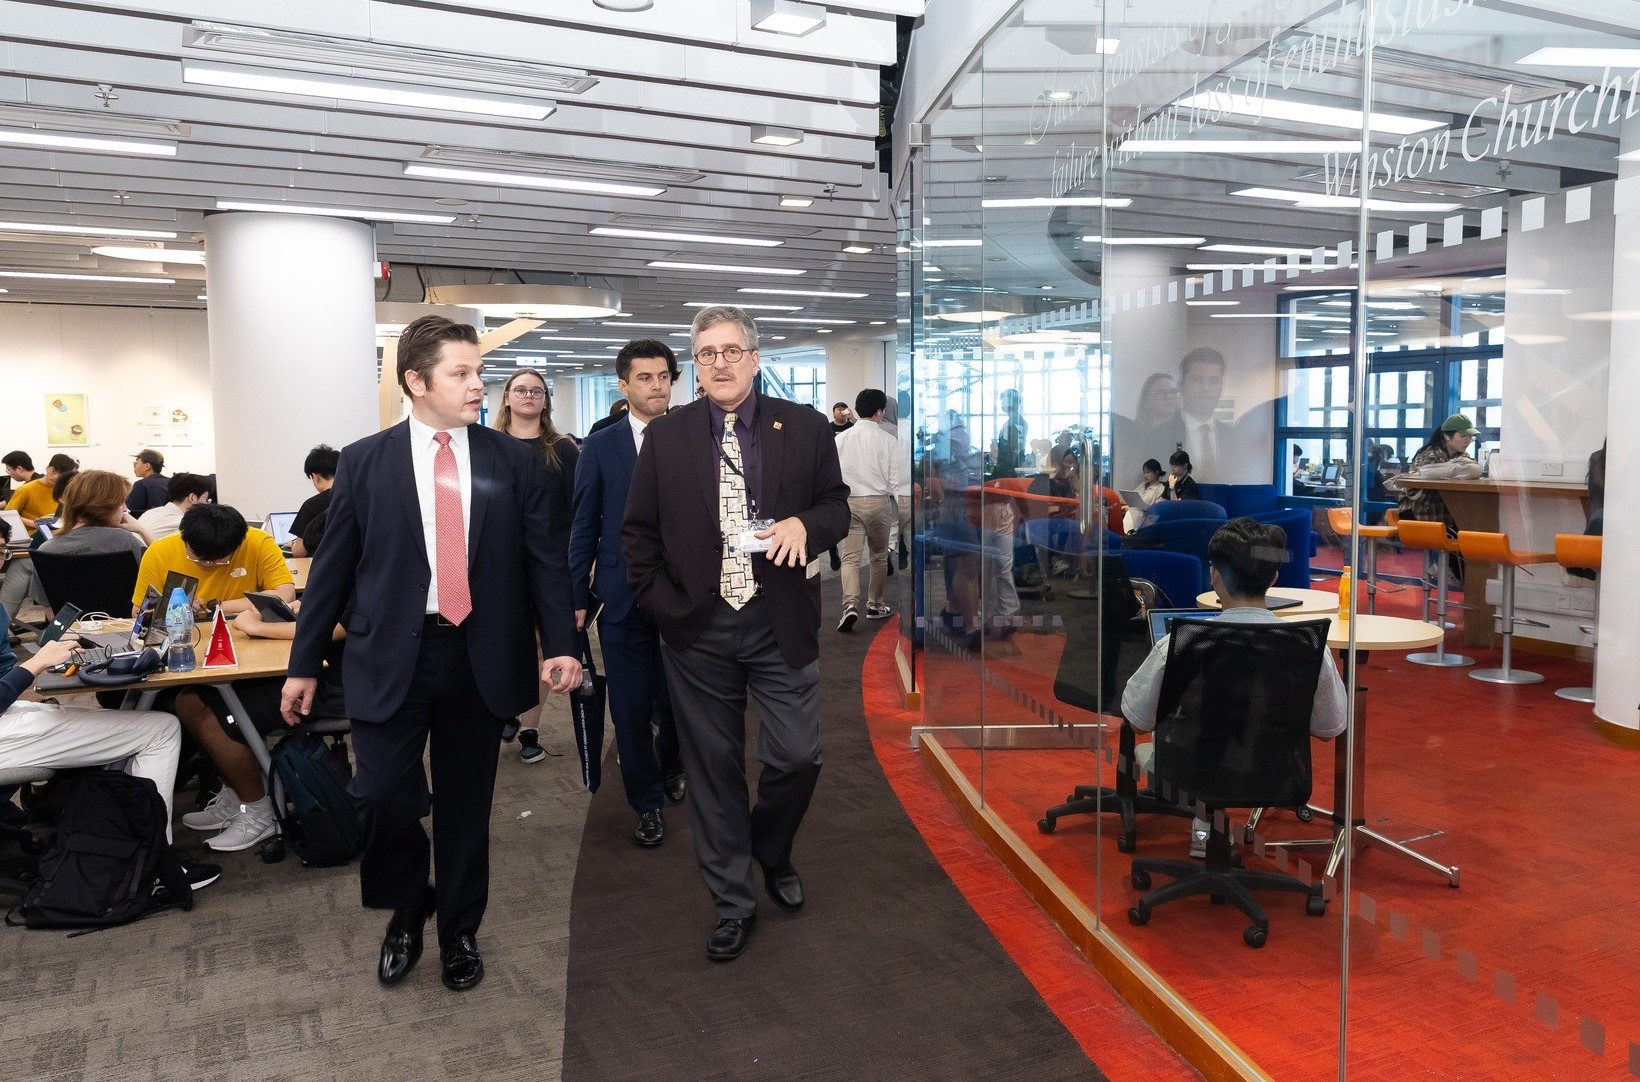 土耳其共和國駐香港總領事 Kerim EVCIN及其代表團參觀科大李兆基圖書館。